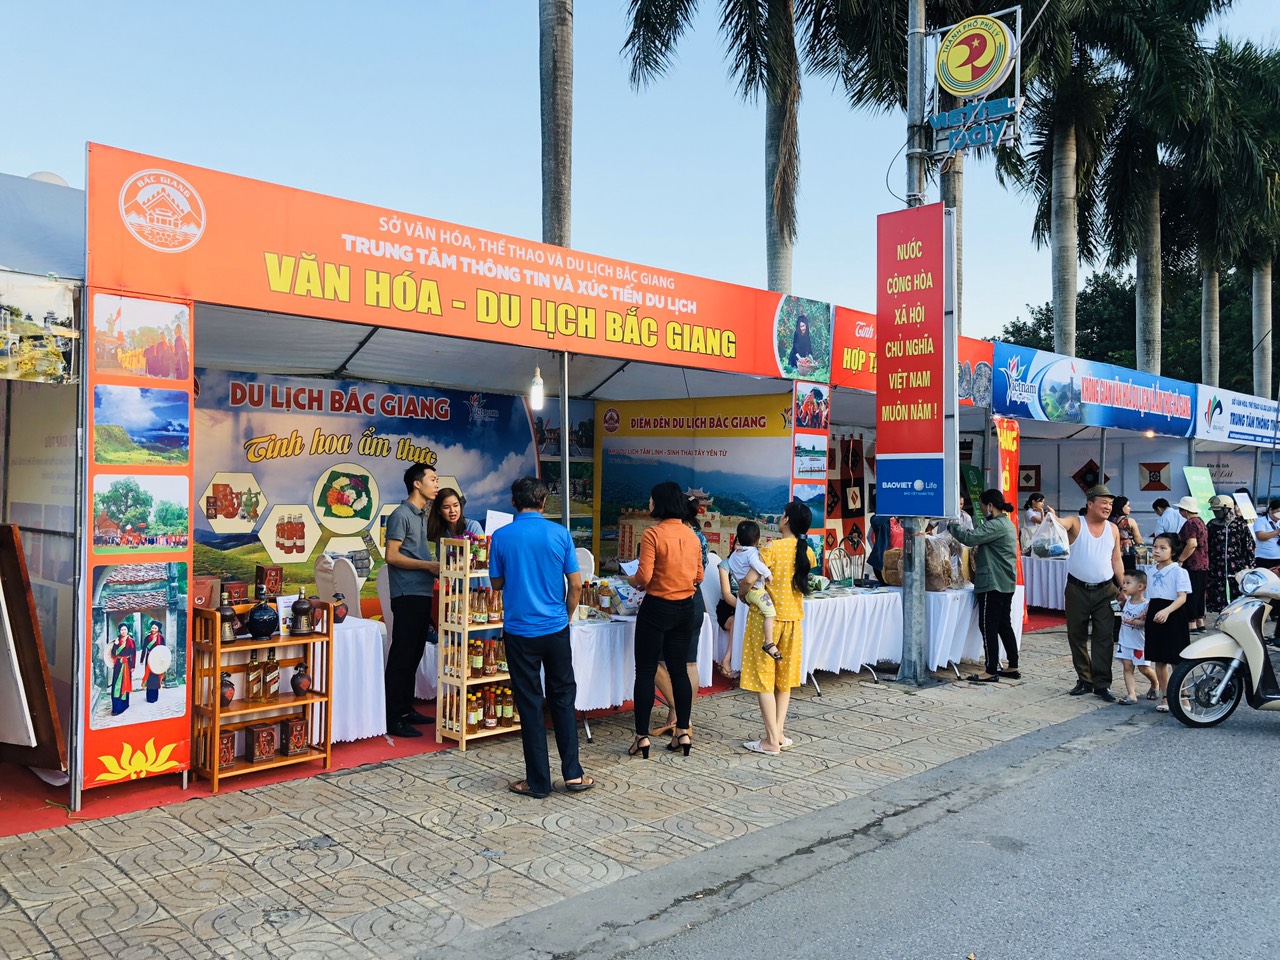 Bắc Giang tham gia Liên hoan Du lịch làng nghề - ẩm thực Hà Nam lần thứ II năm 2019